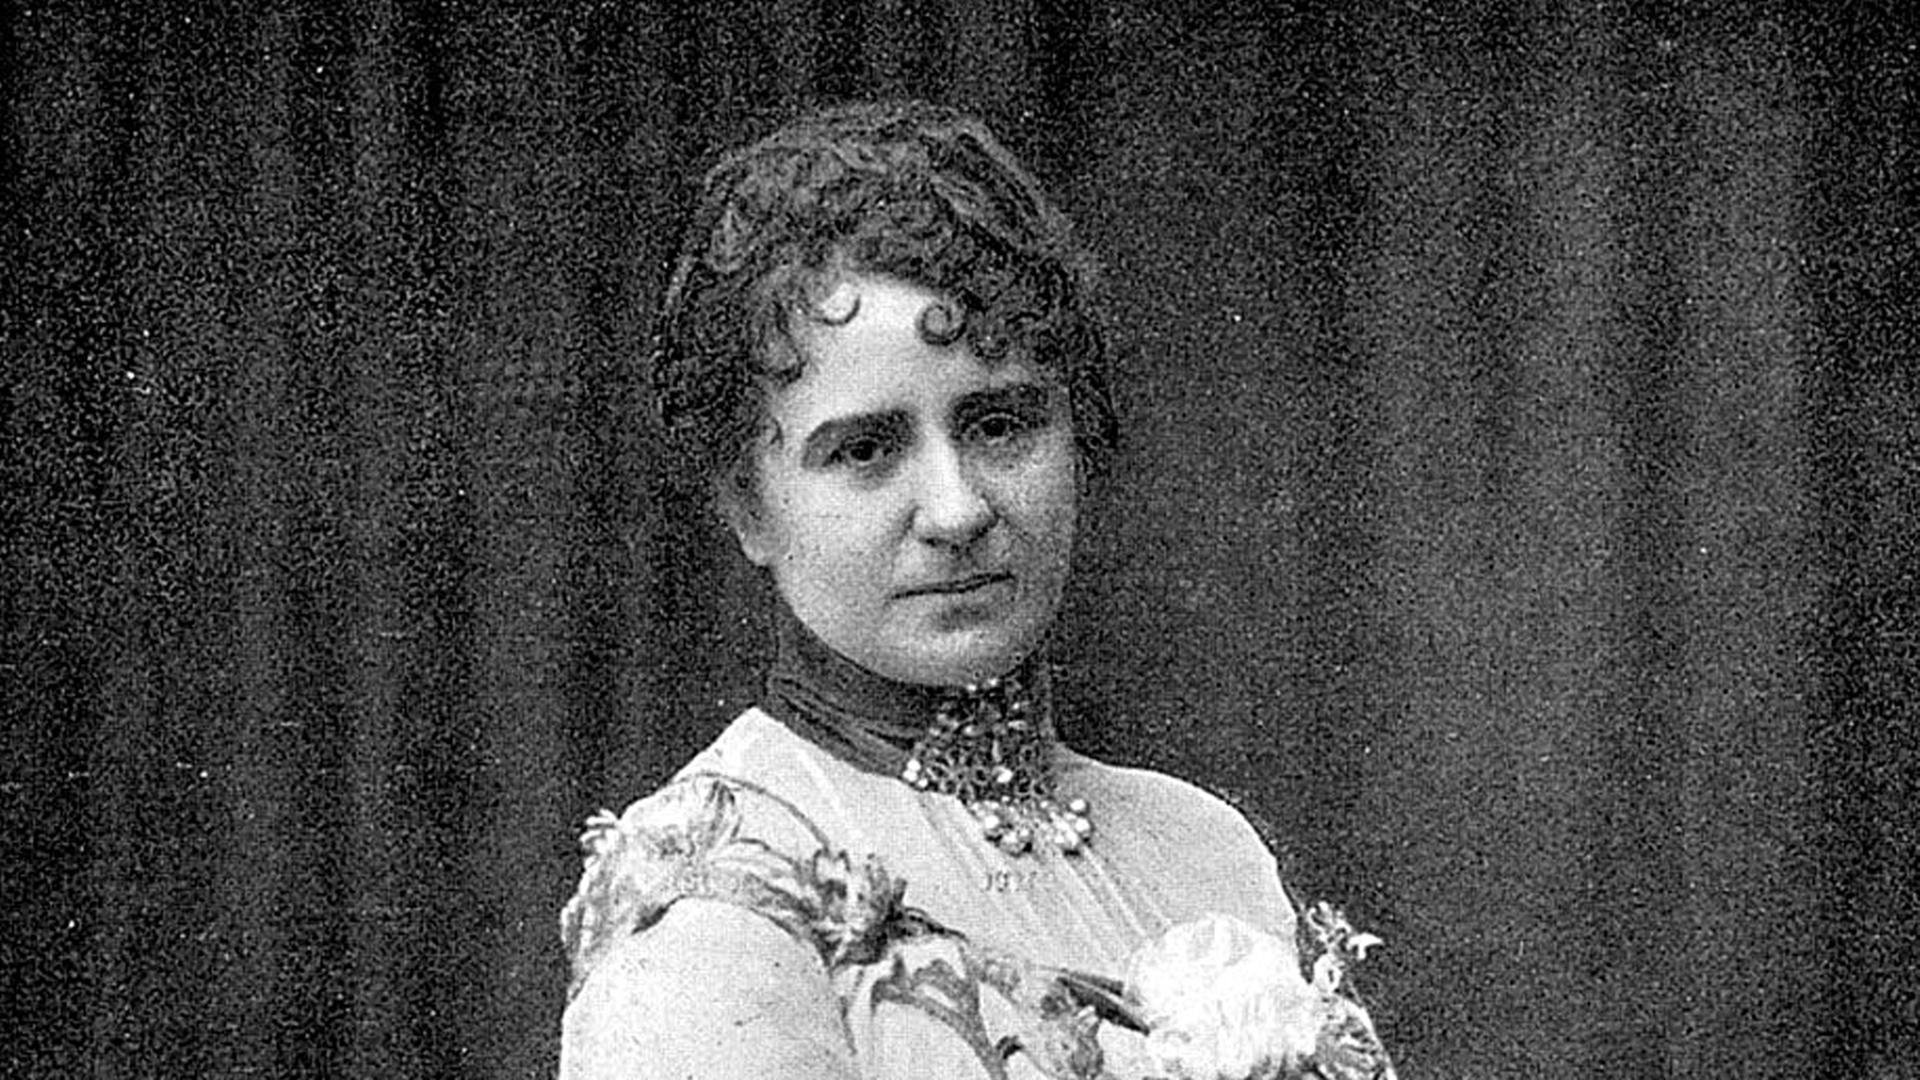 Zeitgenössische Fotografie der Schauspielerin Louise Dumont (1862-1932). Sie gründete 1905 mit ihrem Mann das Düsseldorfer Schauspielhaus.